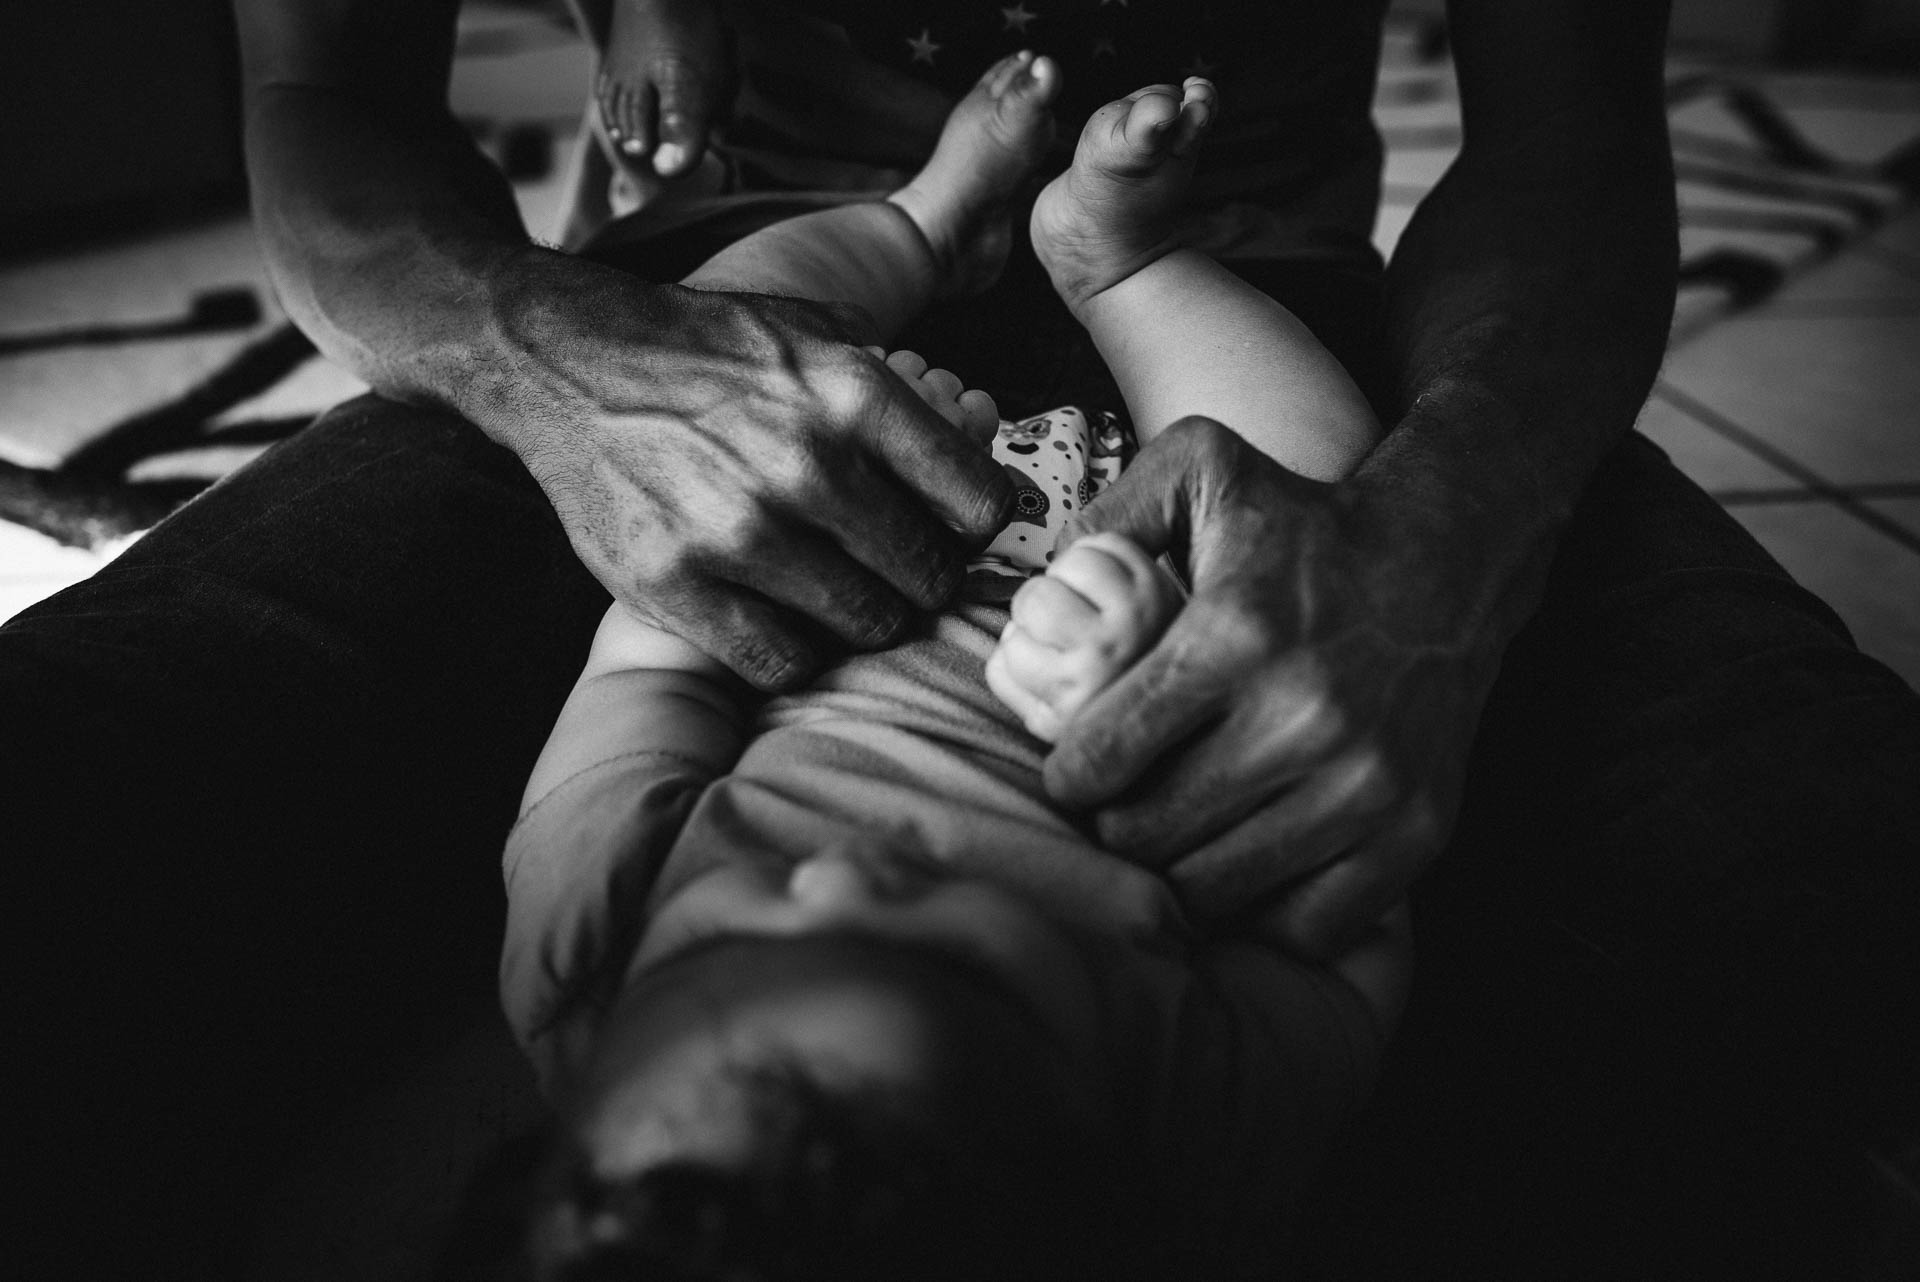 Detailbild von den Händen eines Vaters, die die Hände seines Babys hält, ein Fuss des älteren Kindes, das auf den Schultern des Vaters sitzt, ist sichtbar